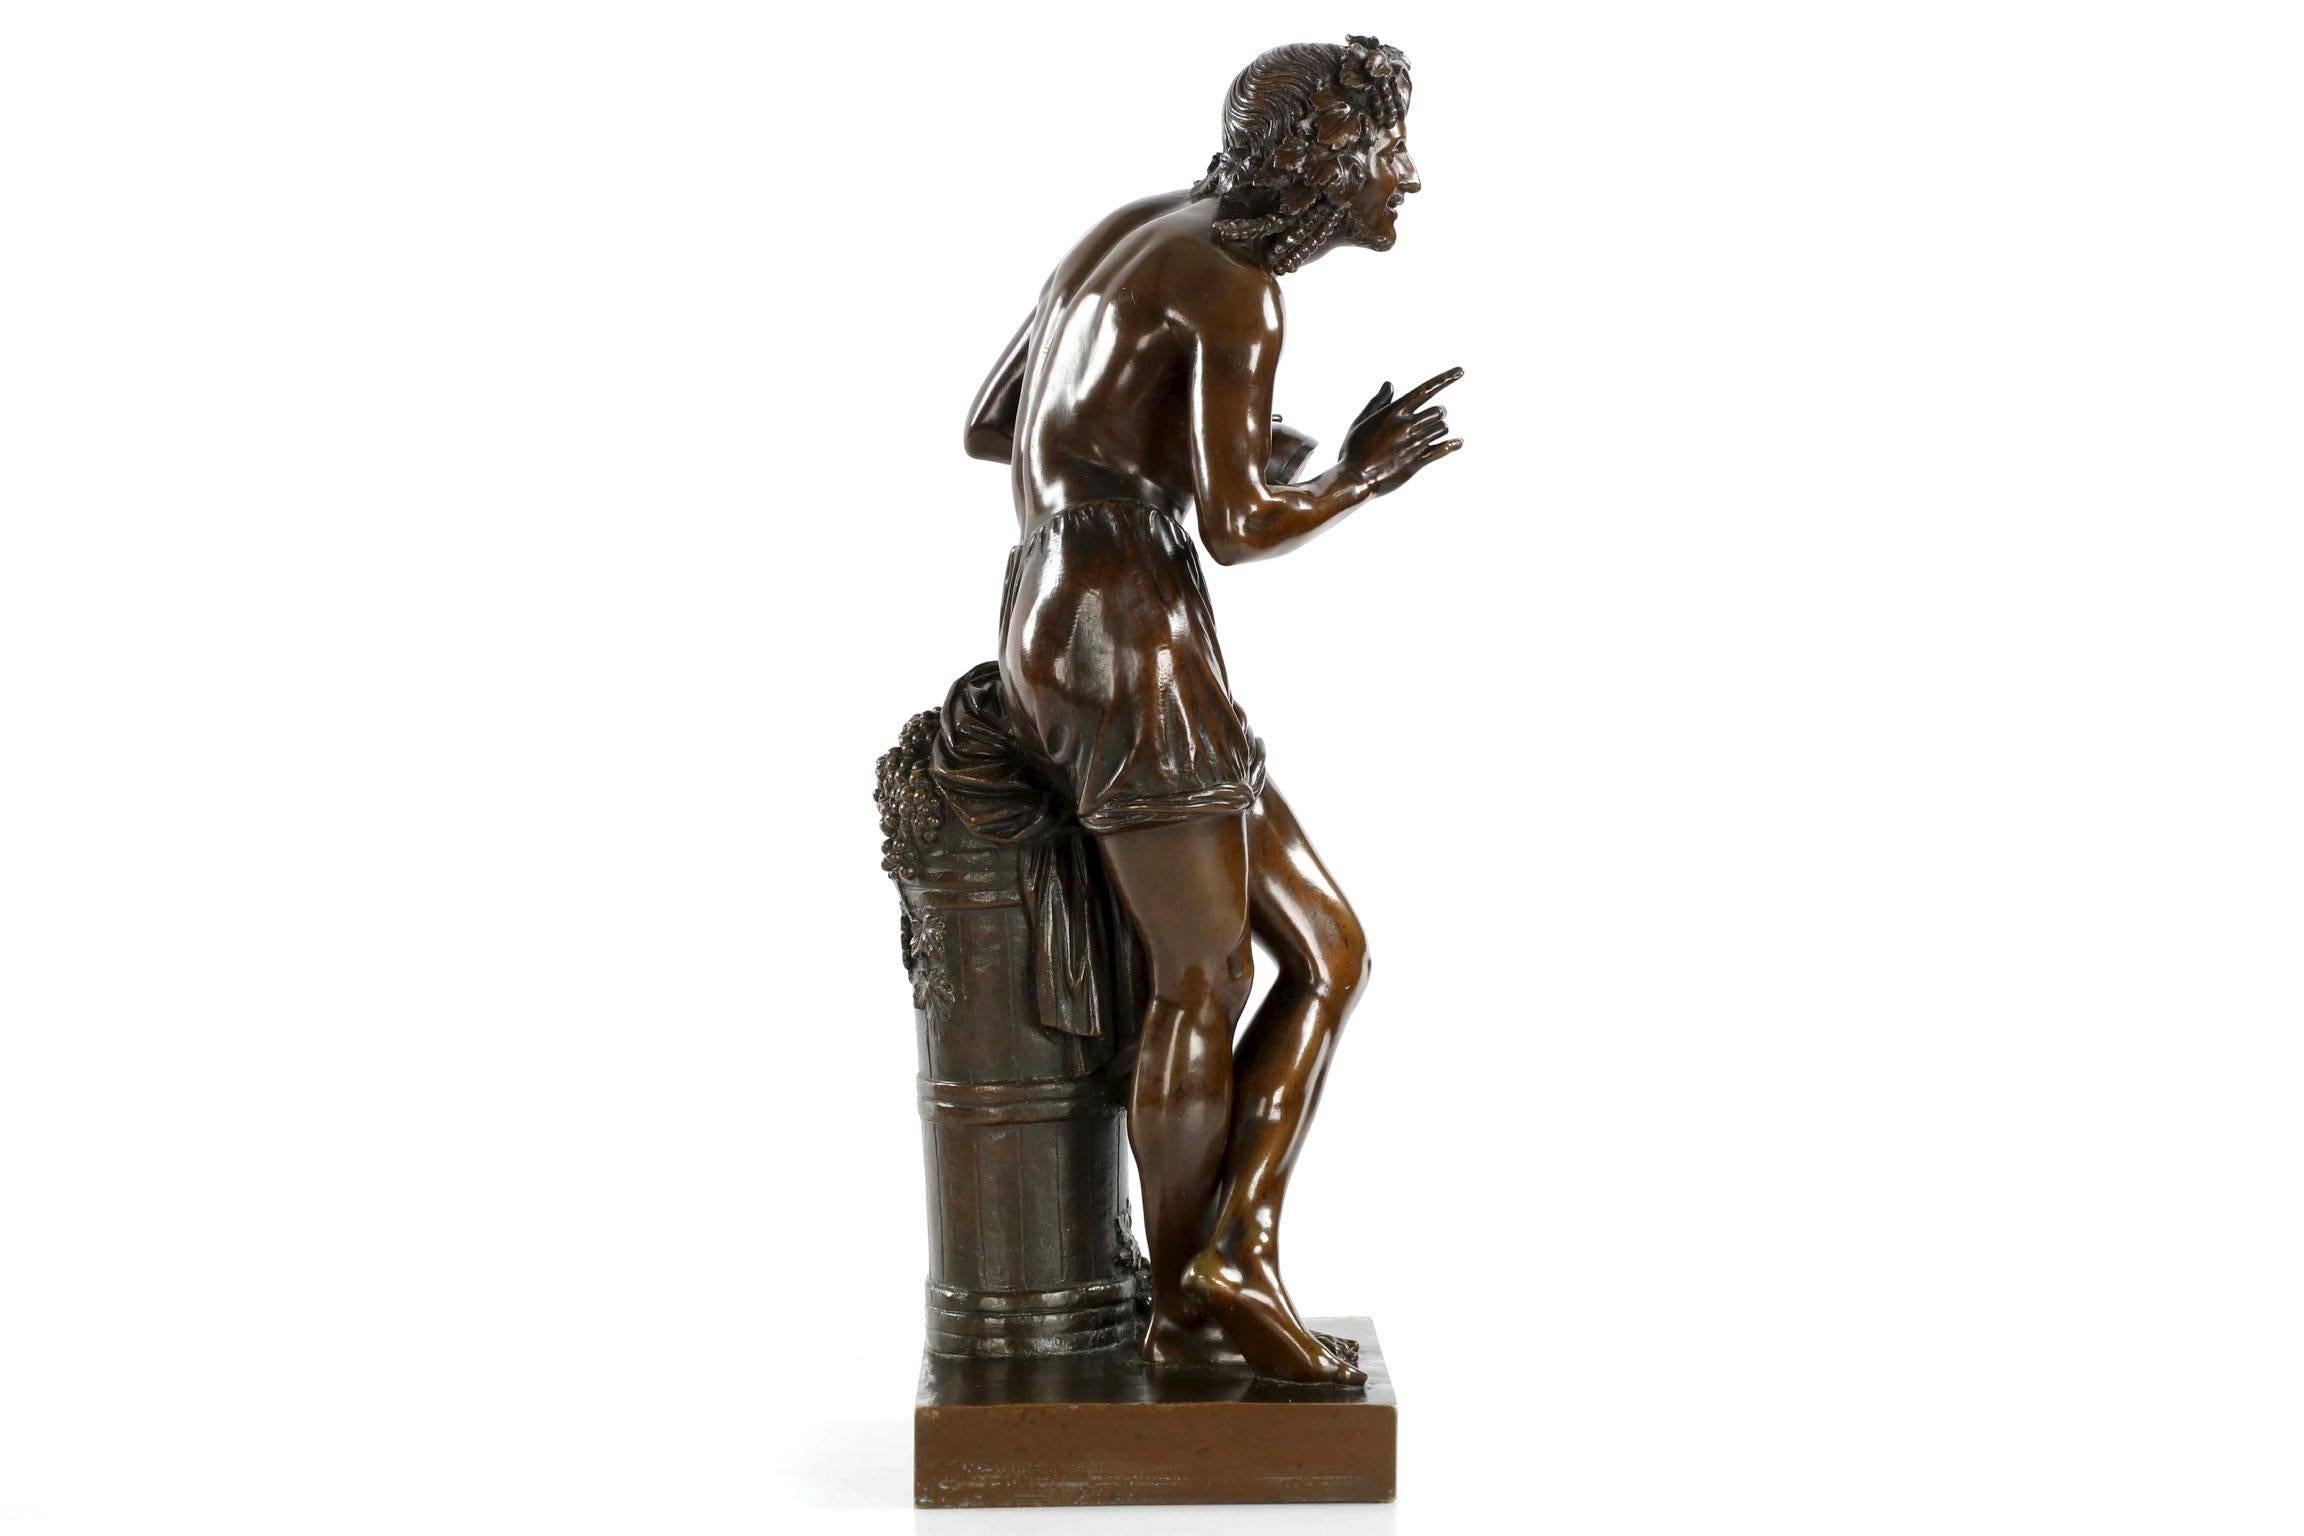 19th Century “Improvisateur” Antique French Bronze Sculpture by François-Joseph Duret